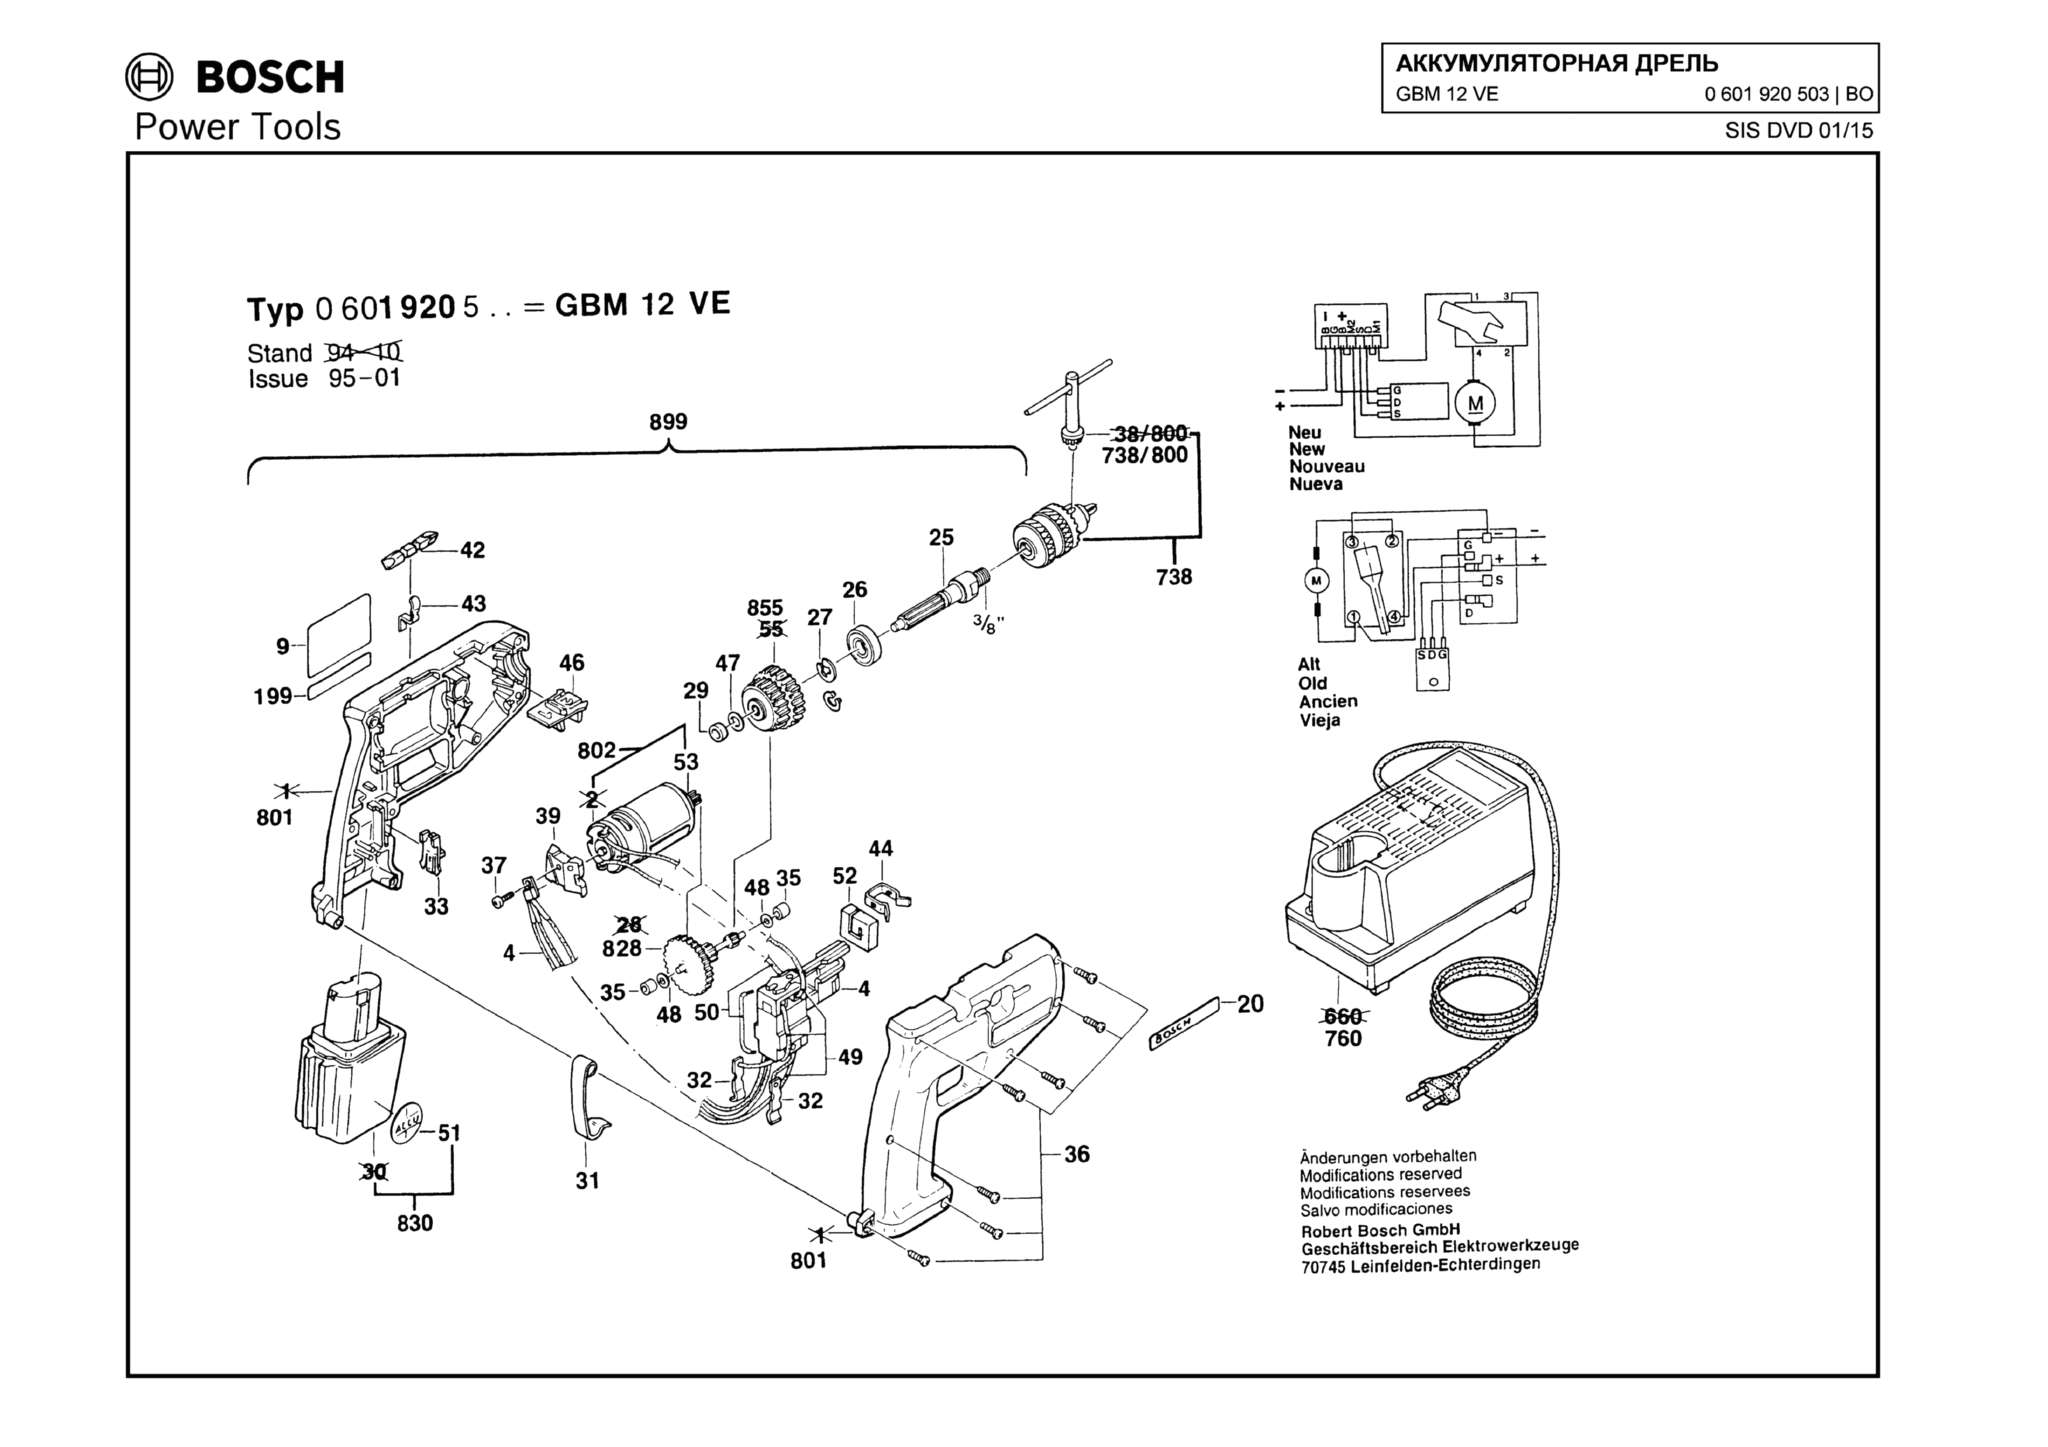 Запчасти, схема и деталировка Bosch GBM 12 VE (ТИП 0601920503)